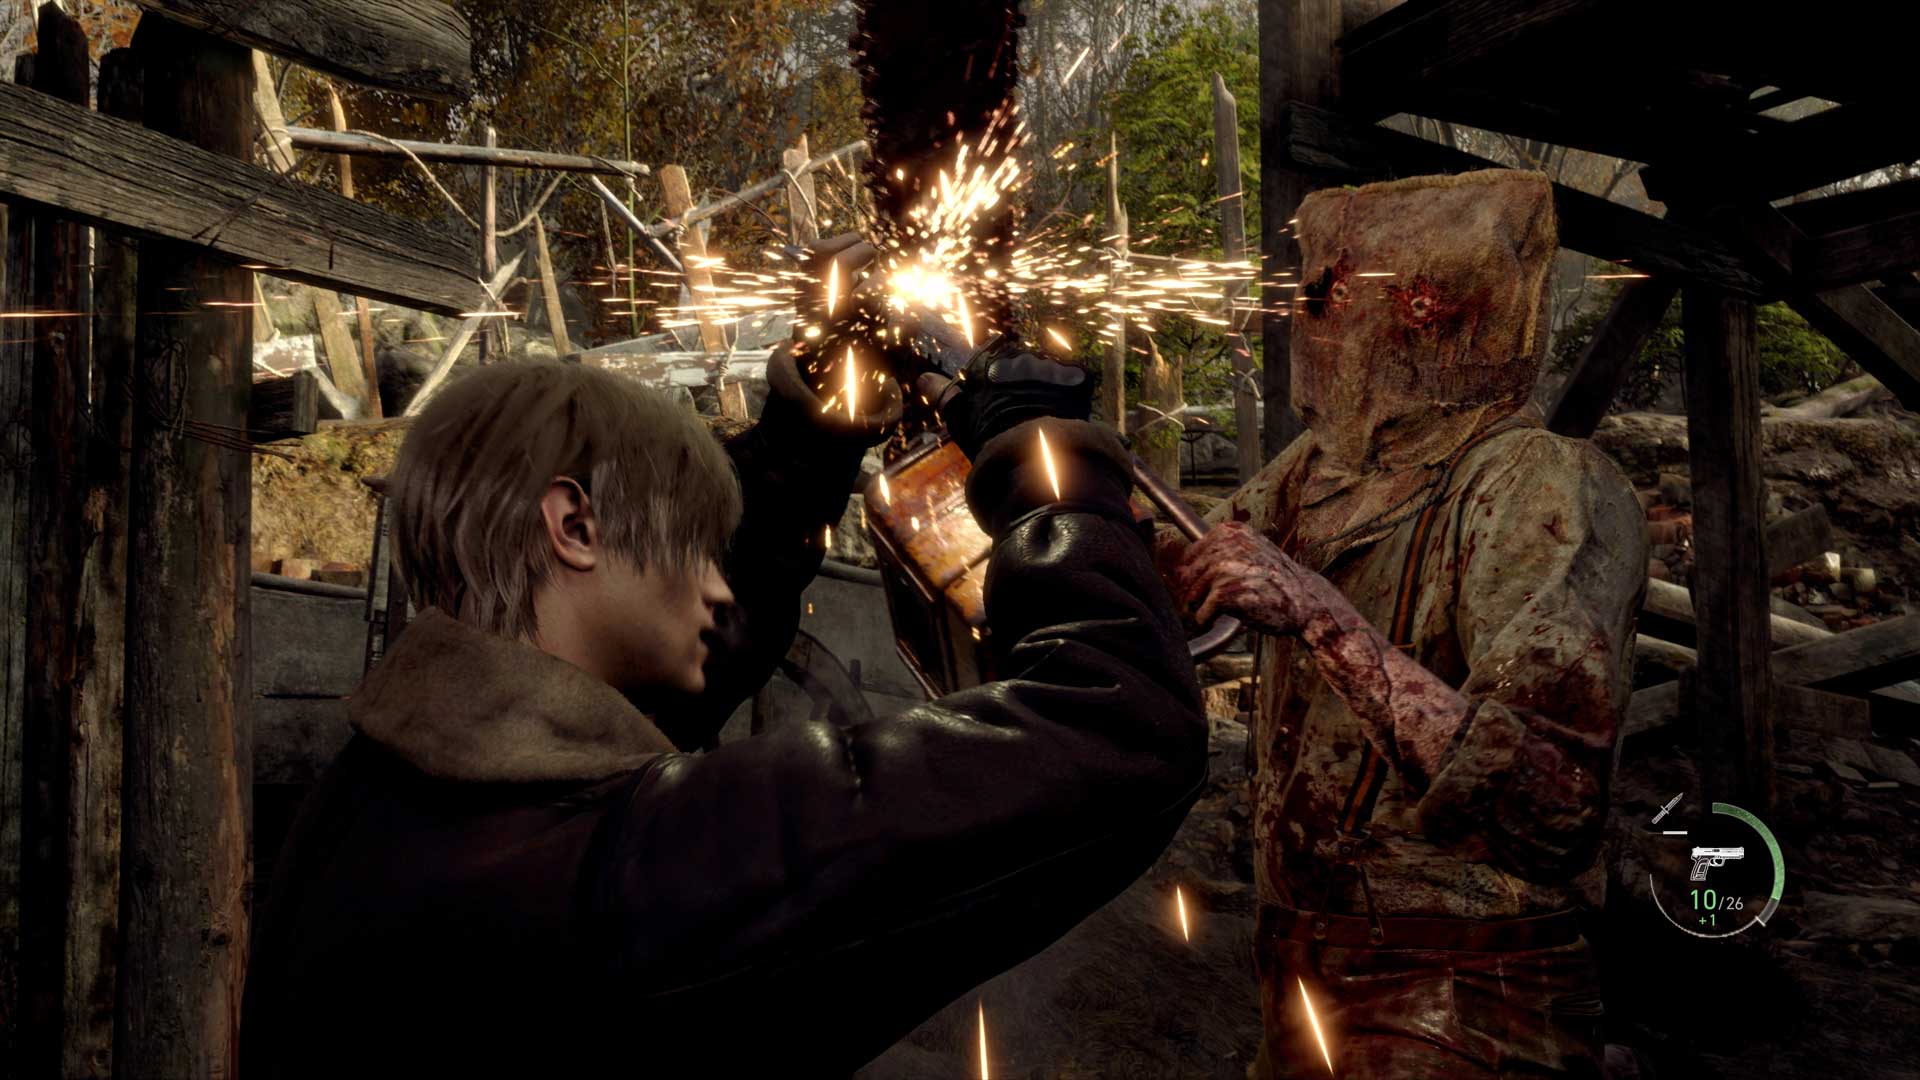 مقاومت لیان با چاقو در برابر اره برقی دکتر سالوادور در بازی Resident Evil 4 Remake شرکت Capcom (ریمیک رزیدنت ایول ۴ کپکام)